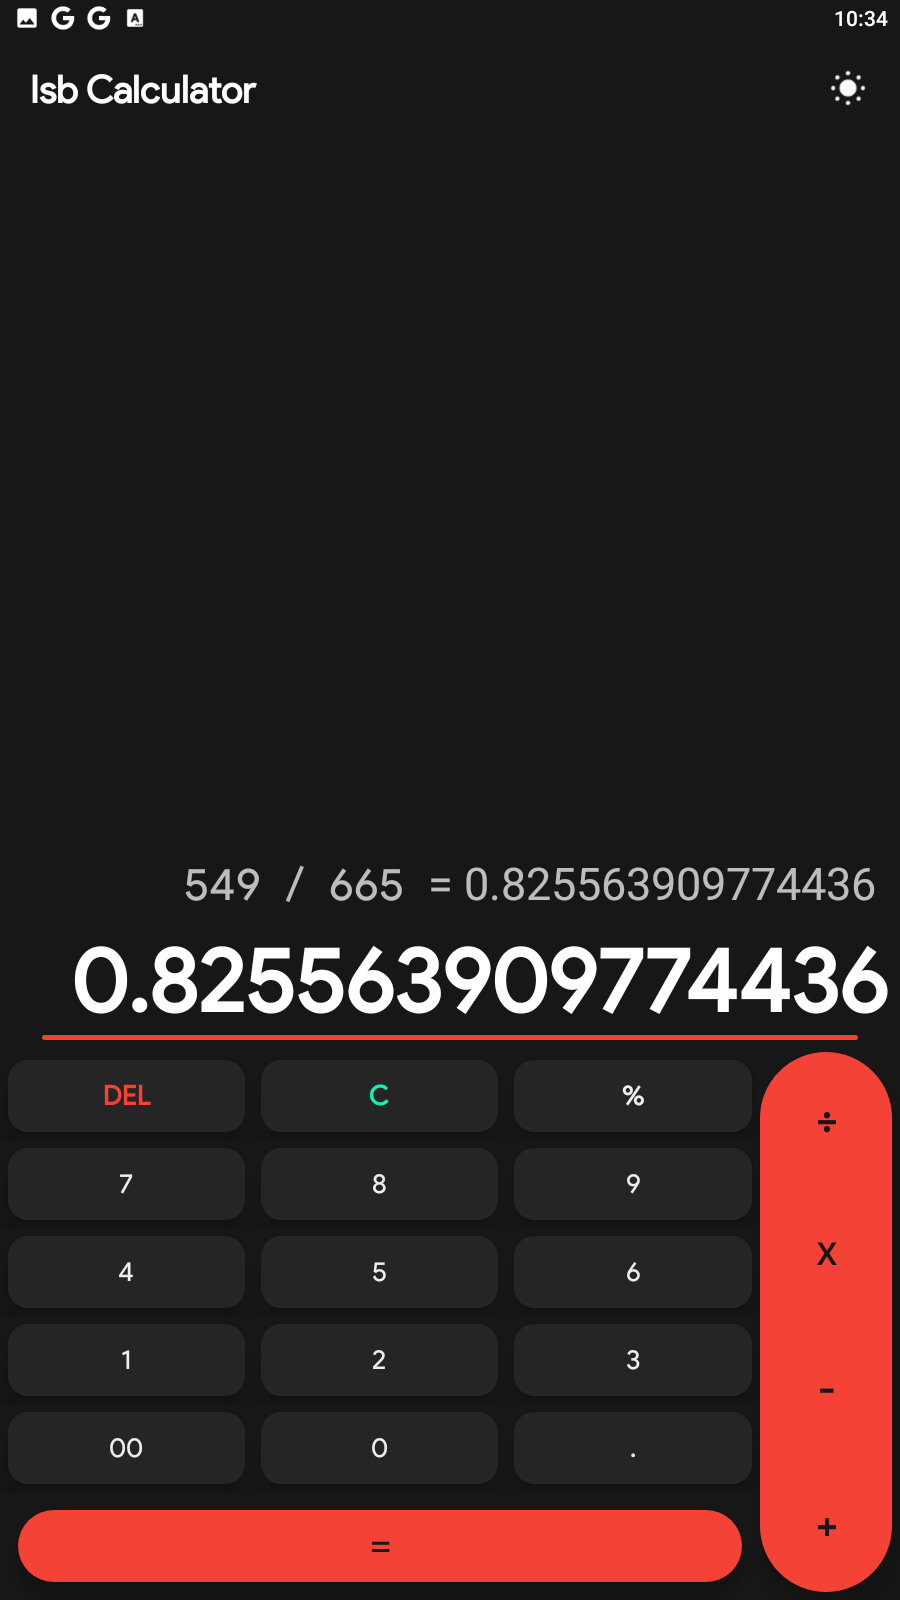 Zalmi Calculator